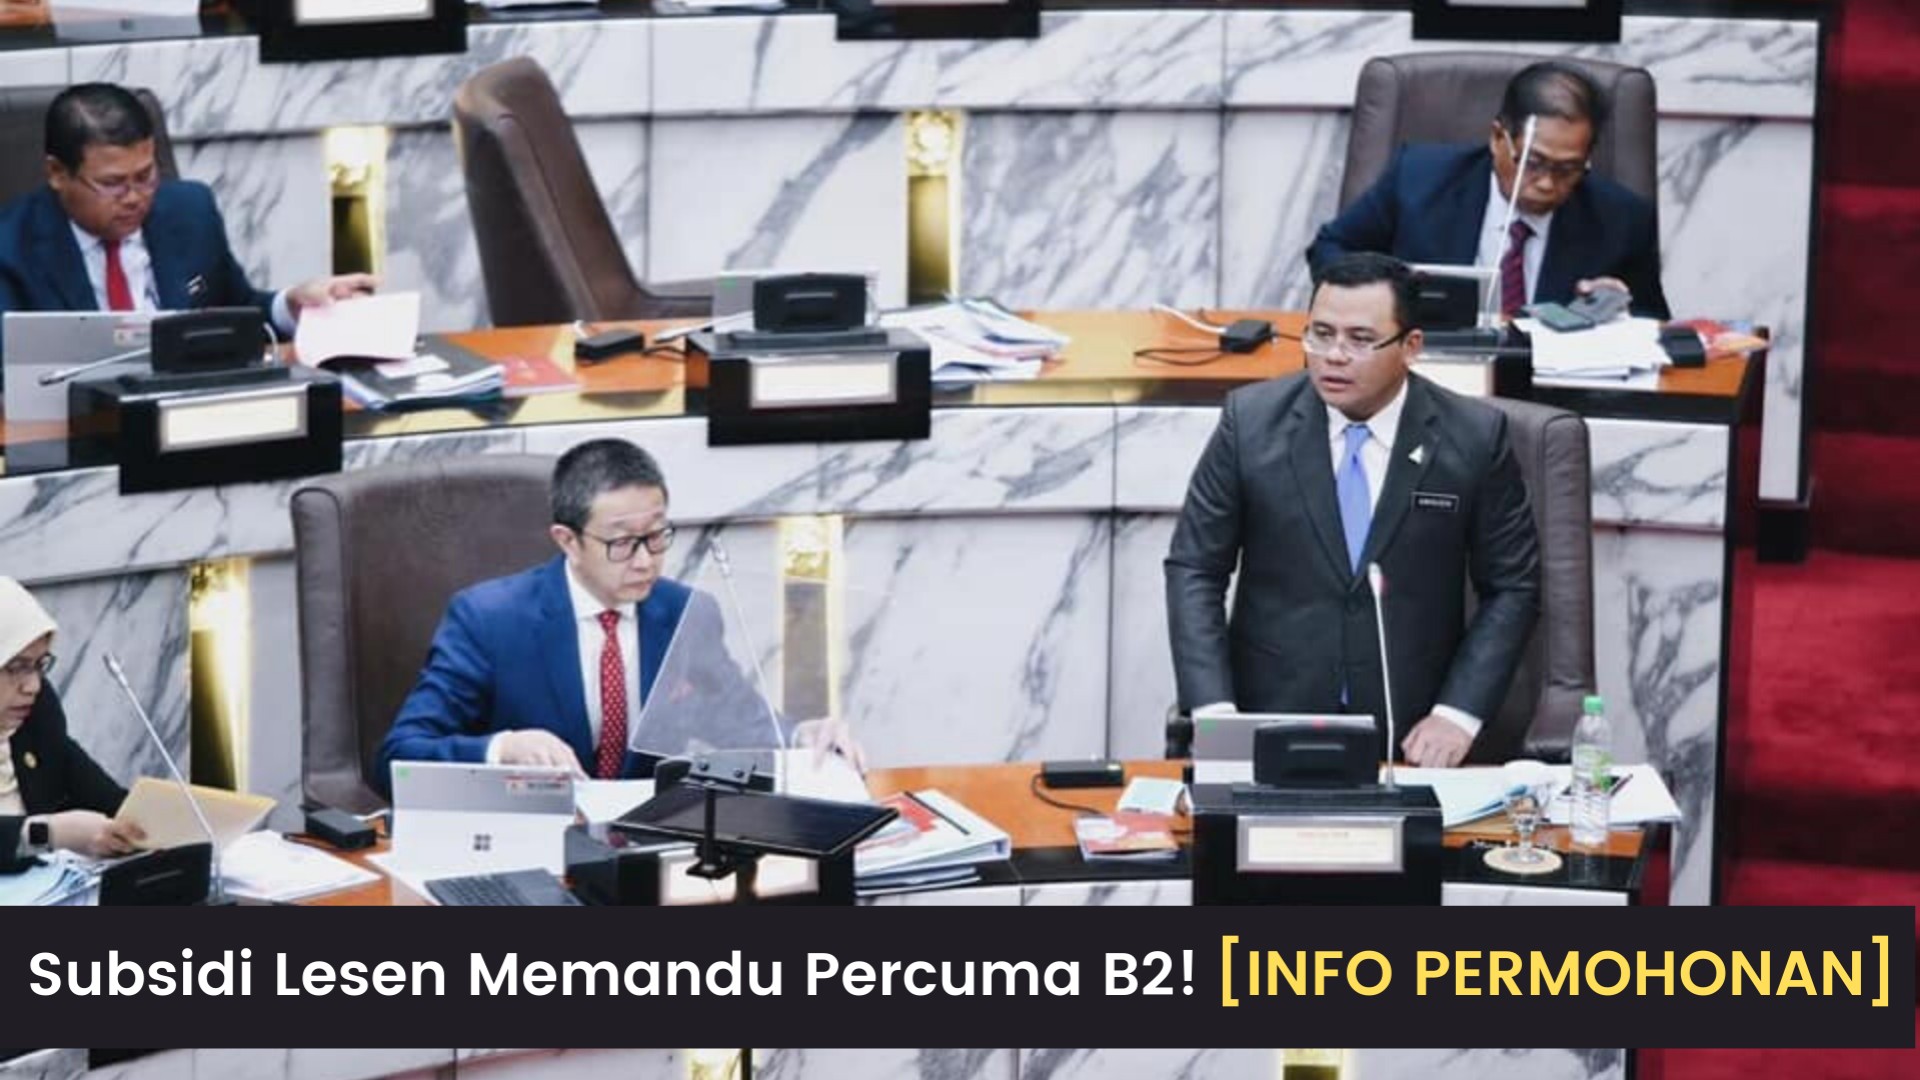 PERMOHONAN Untuk Subsidi Lesen B2! Terima kasih Datuk Seri Amirudin Shari!